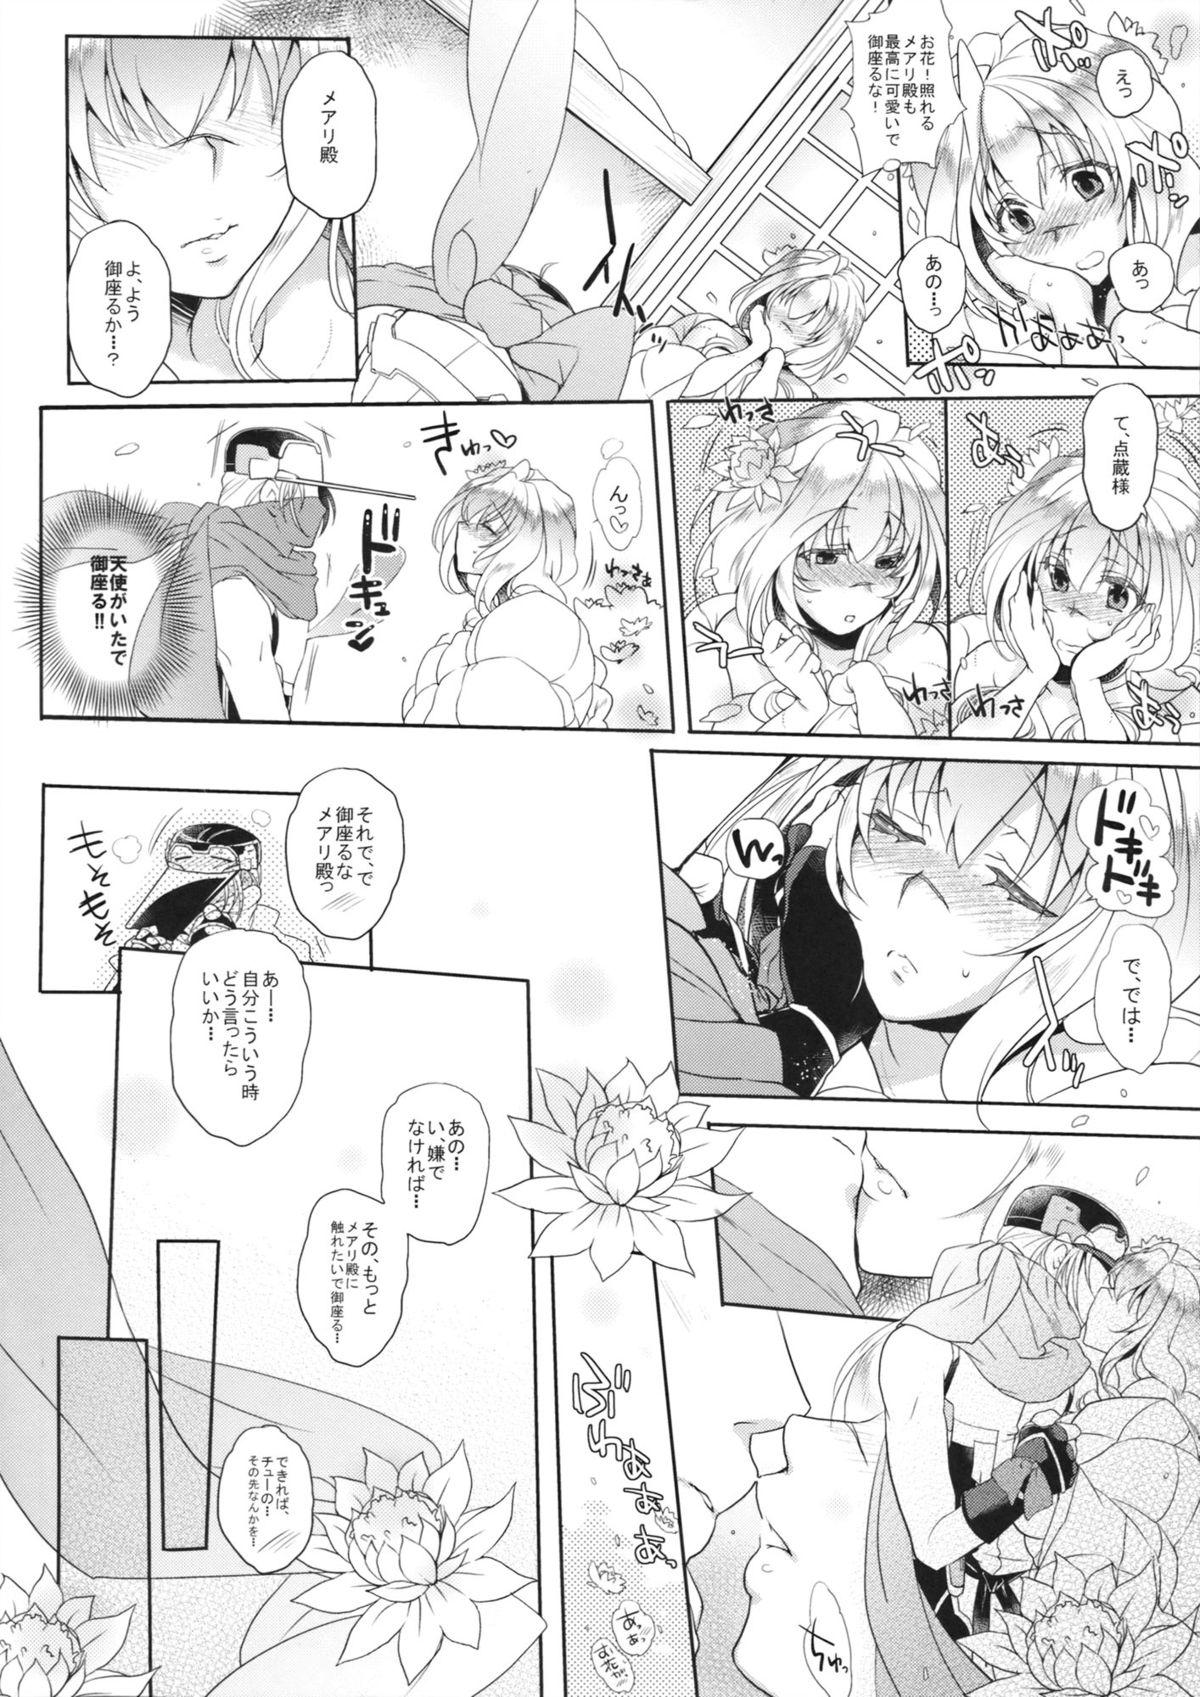 Mms Water lily III - Kyoukai senjou no horizon Romance - Page 5